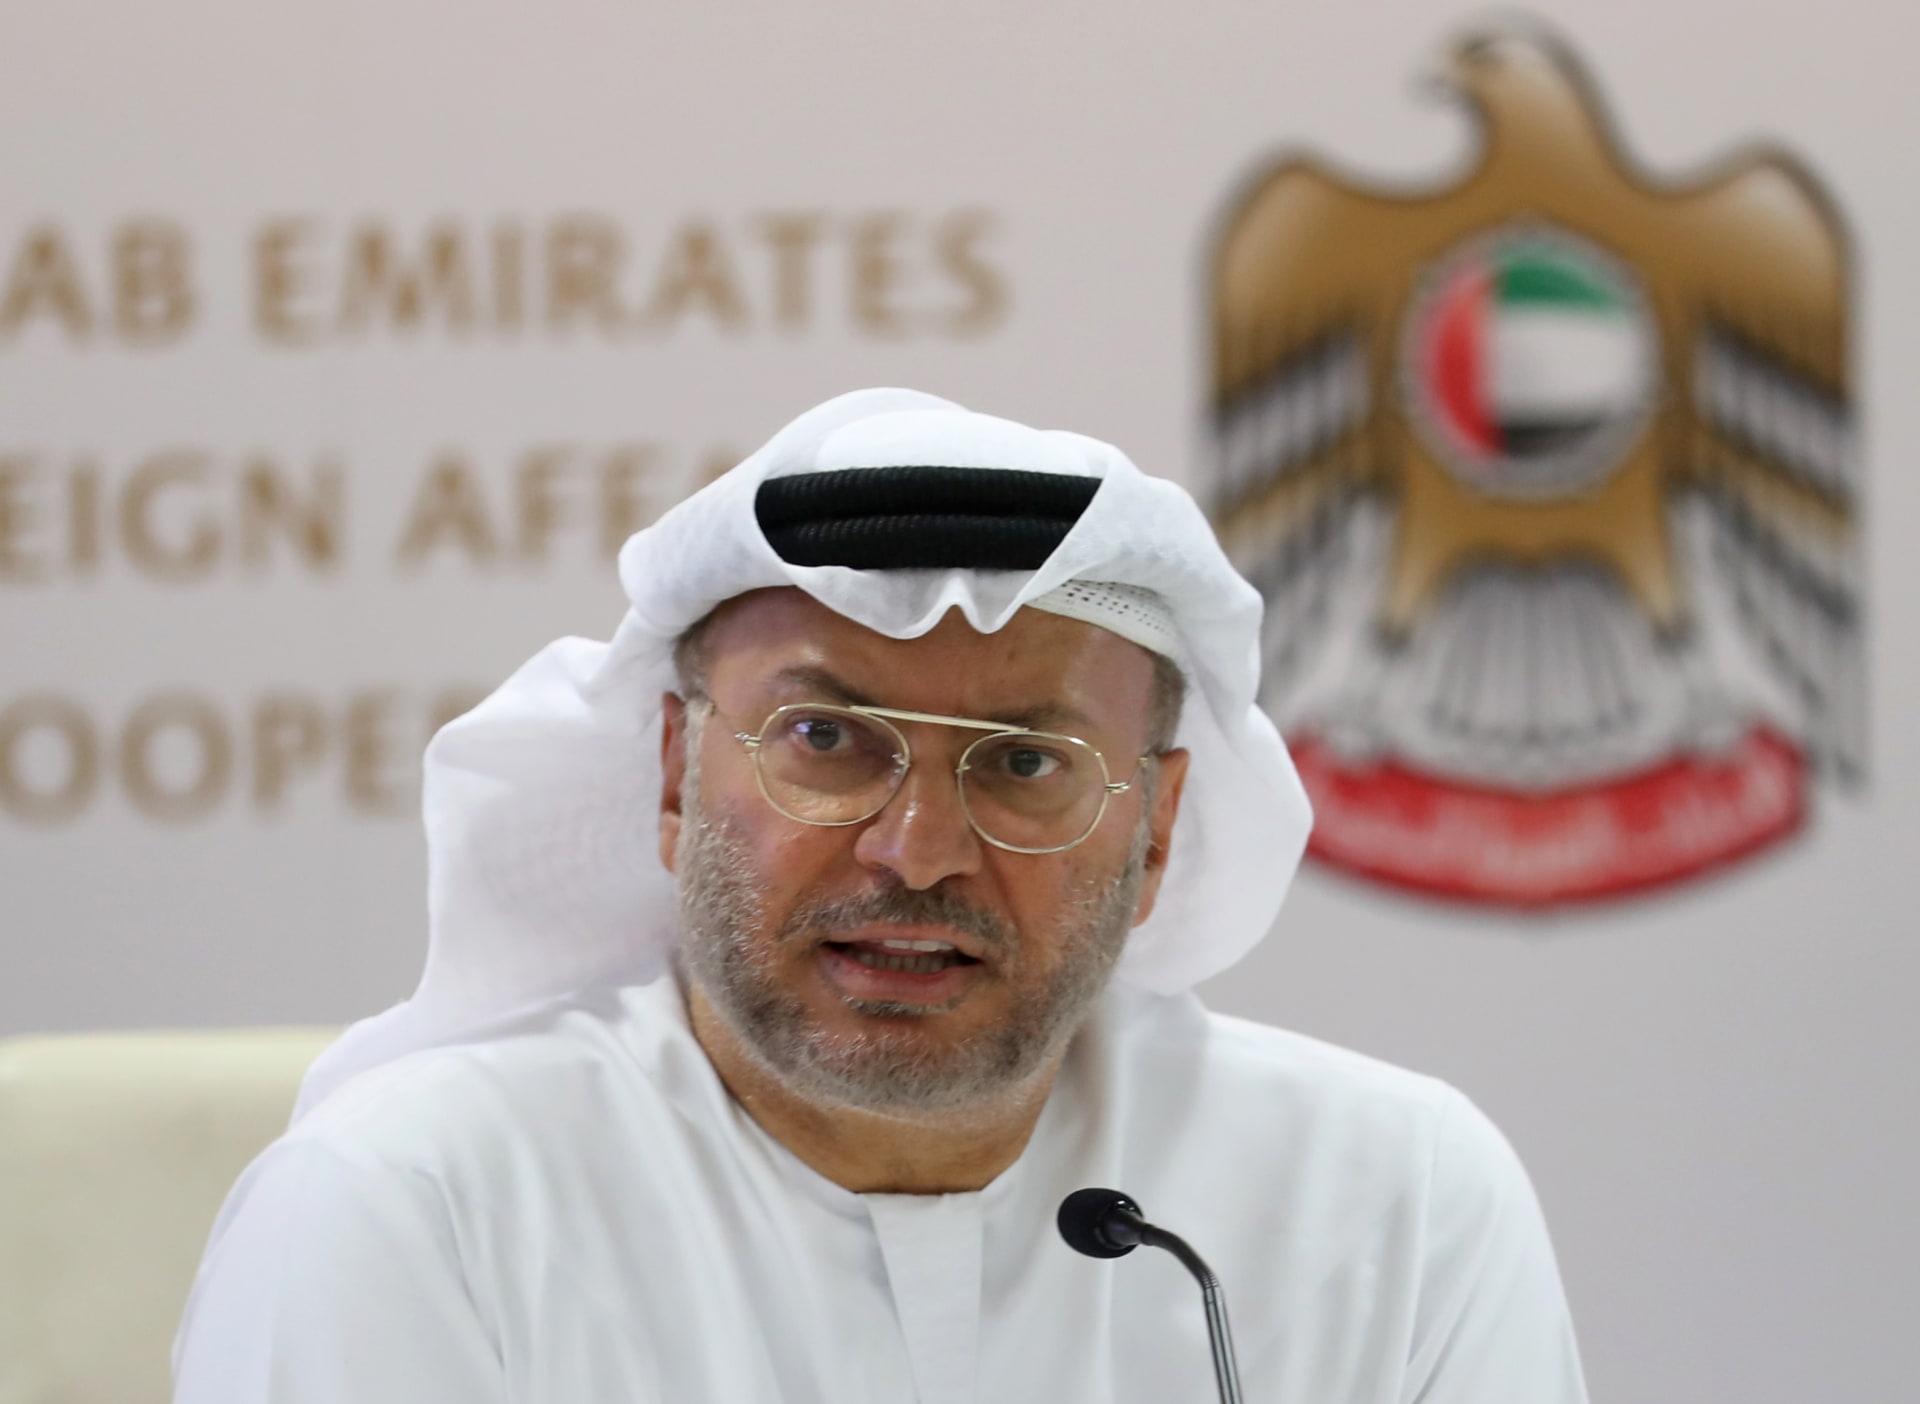 الإمارات.. مستشار رئاسي يرد على تقرير هيومن رايتس ووتش حول وضع طالبي اللجوء الأفغان